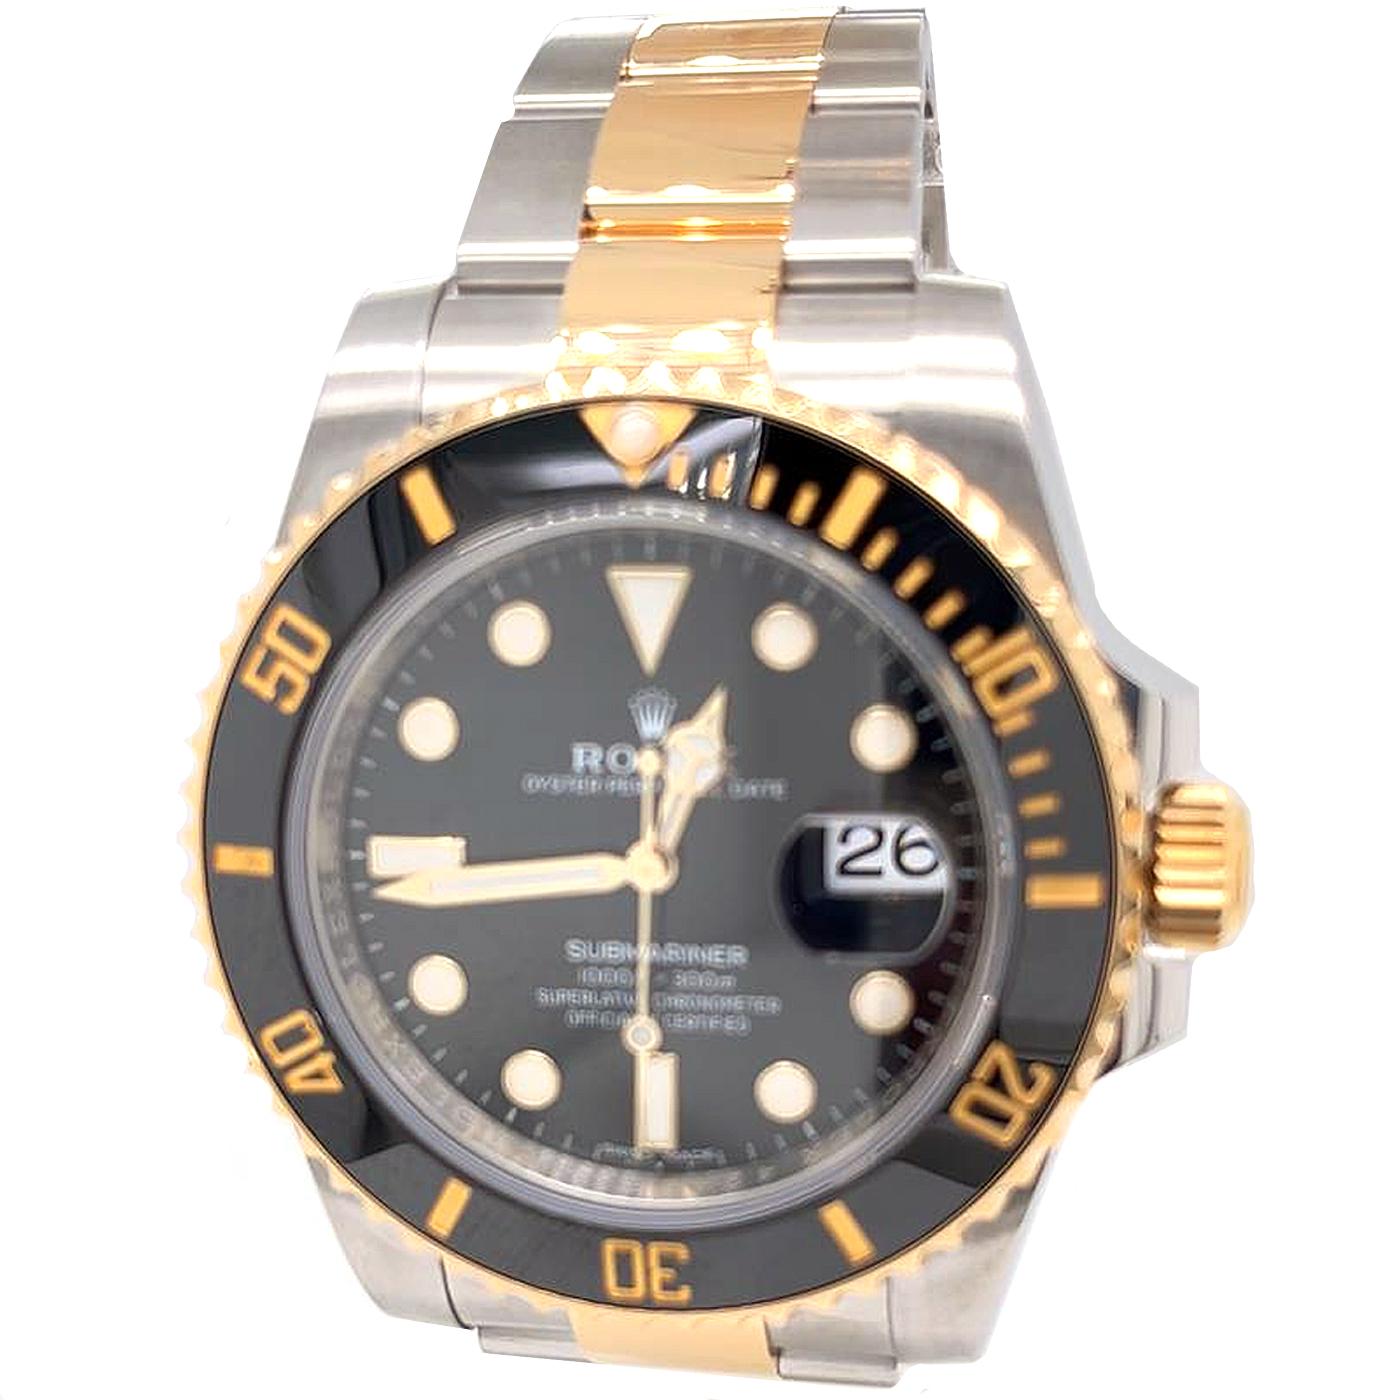 Rolex Montre Submariner Date 116613LN pour hommes. Ce bracelet est composé d'un boîtier jaune brossé et poli et d'un bracelet en forme d'huître qui est une combinaison d'acier huîtres et d'or jaune 18 ct. La lunette rotative undirectionnelle est